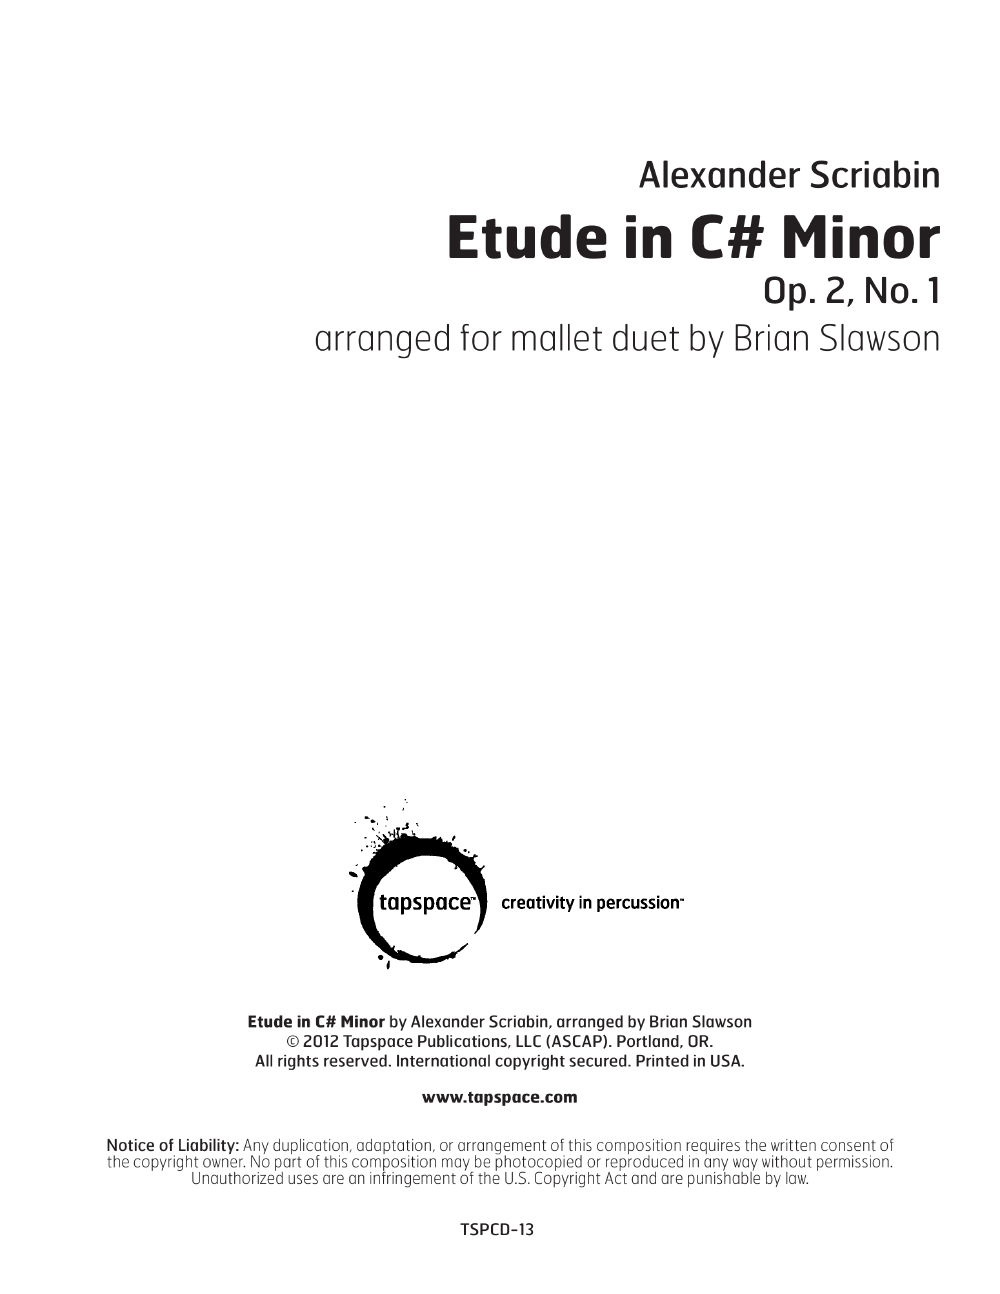 Etude in C# Minor #1, Op.2 Vibraphone and Marimba Duet